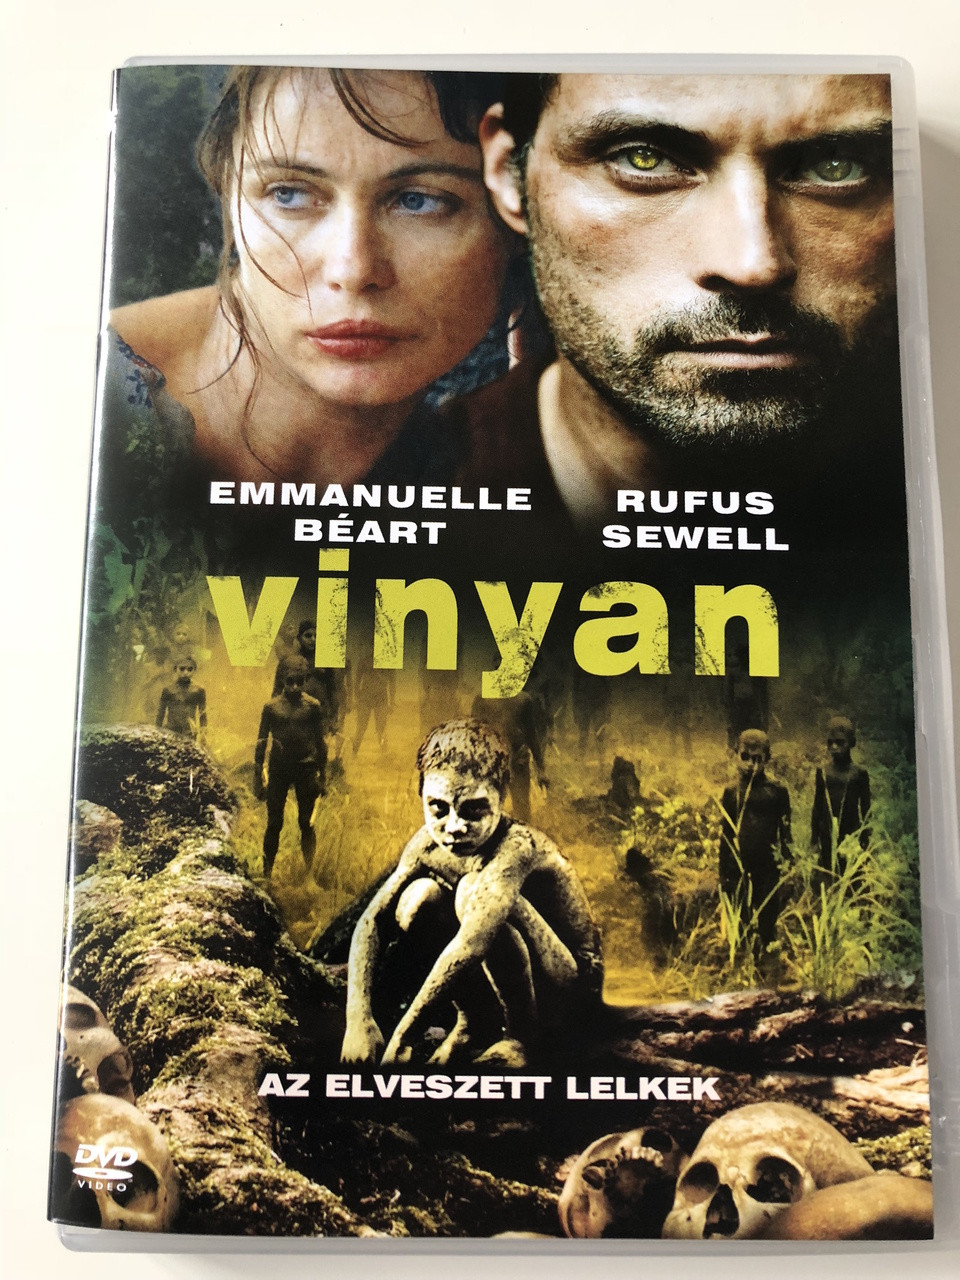 Vinyan - Az elveszett lelkek 2009 DVD / Directed by Fabrice du Welz /  Starring: Emmanuelle Béart, Rufus Sewell, Julie Dreyfus - bibleinmylanguage